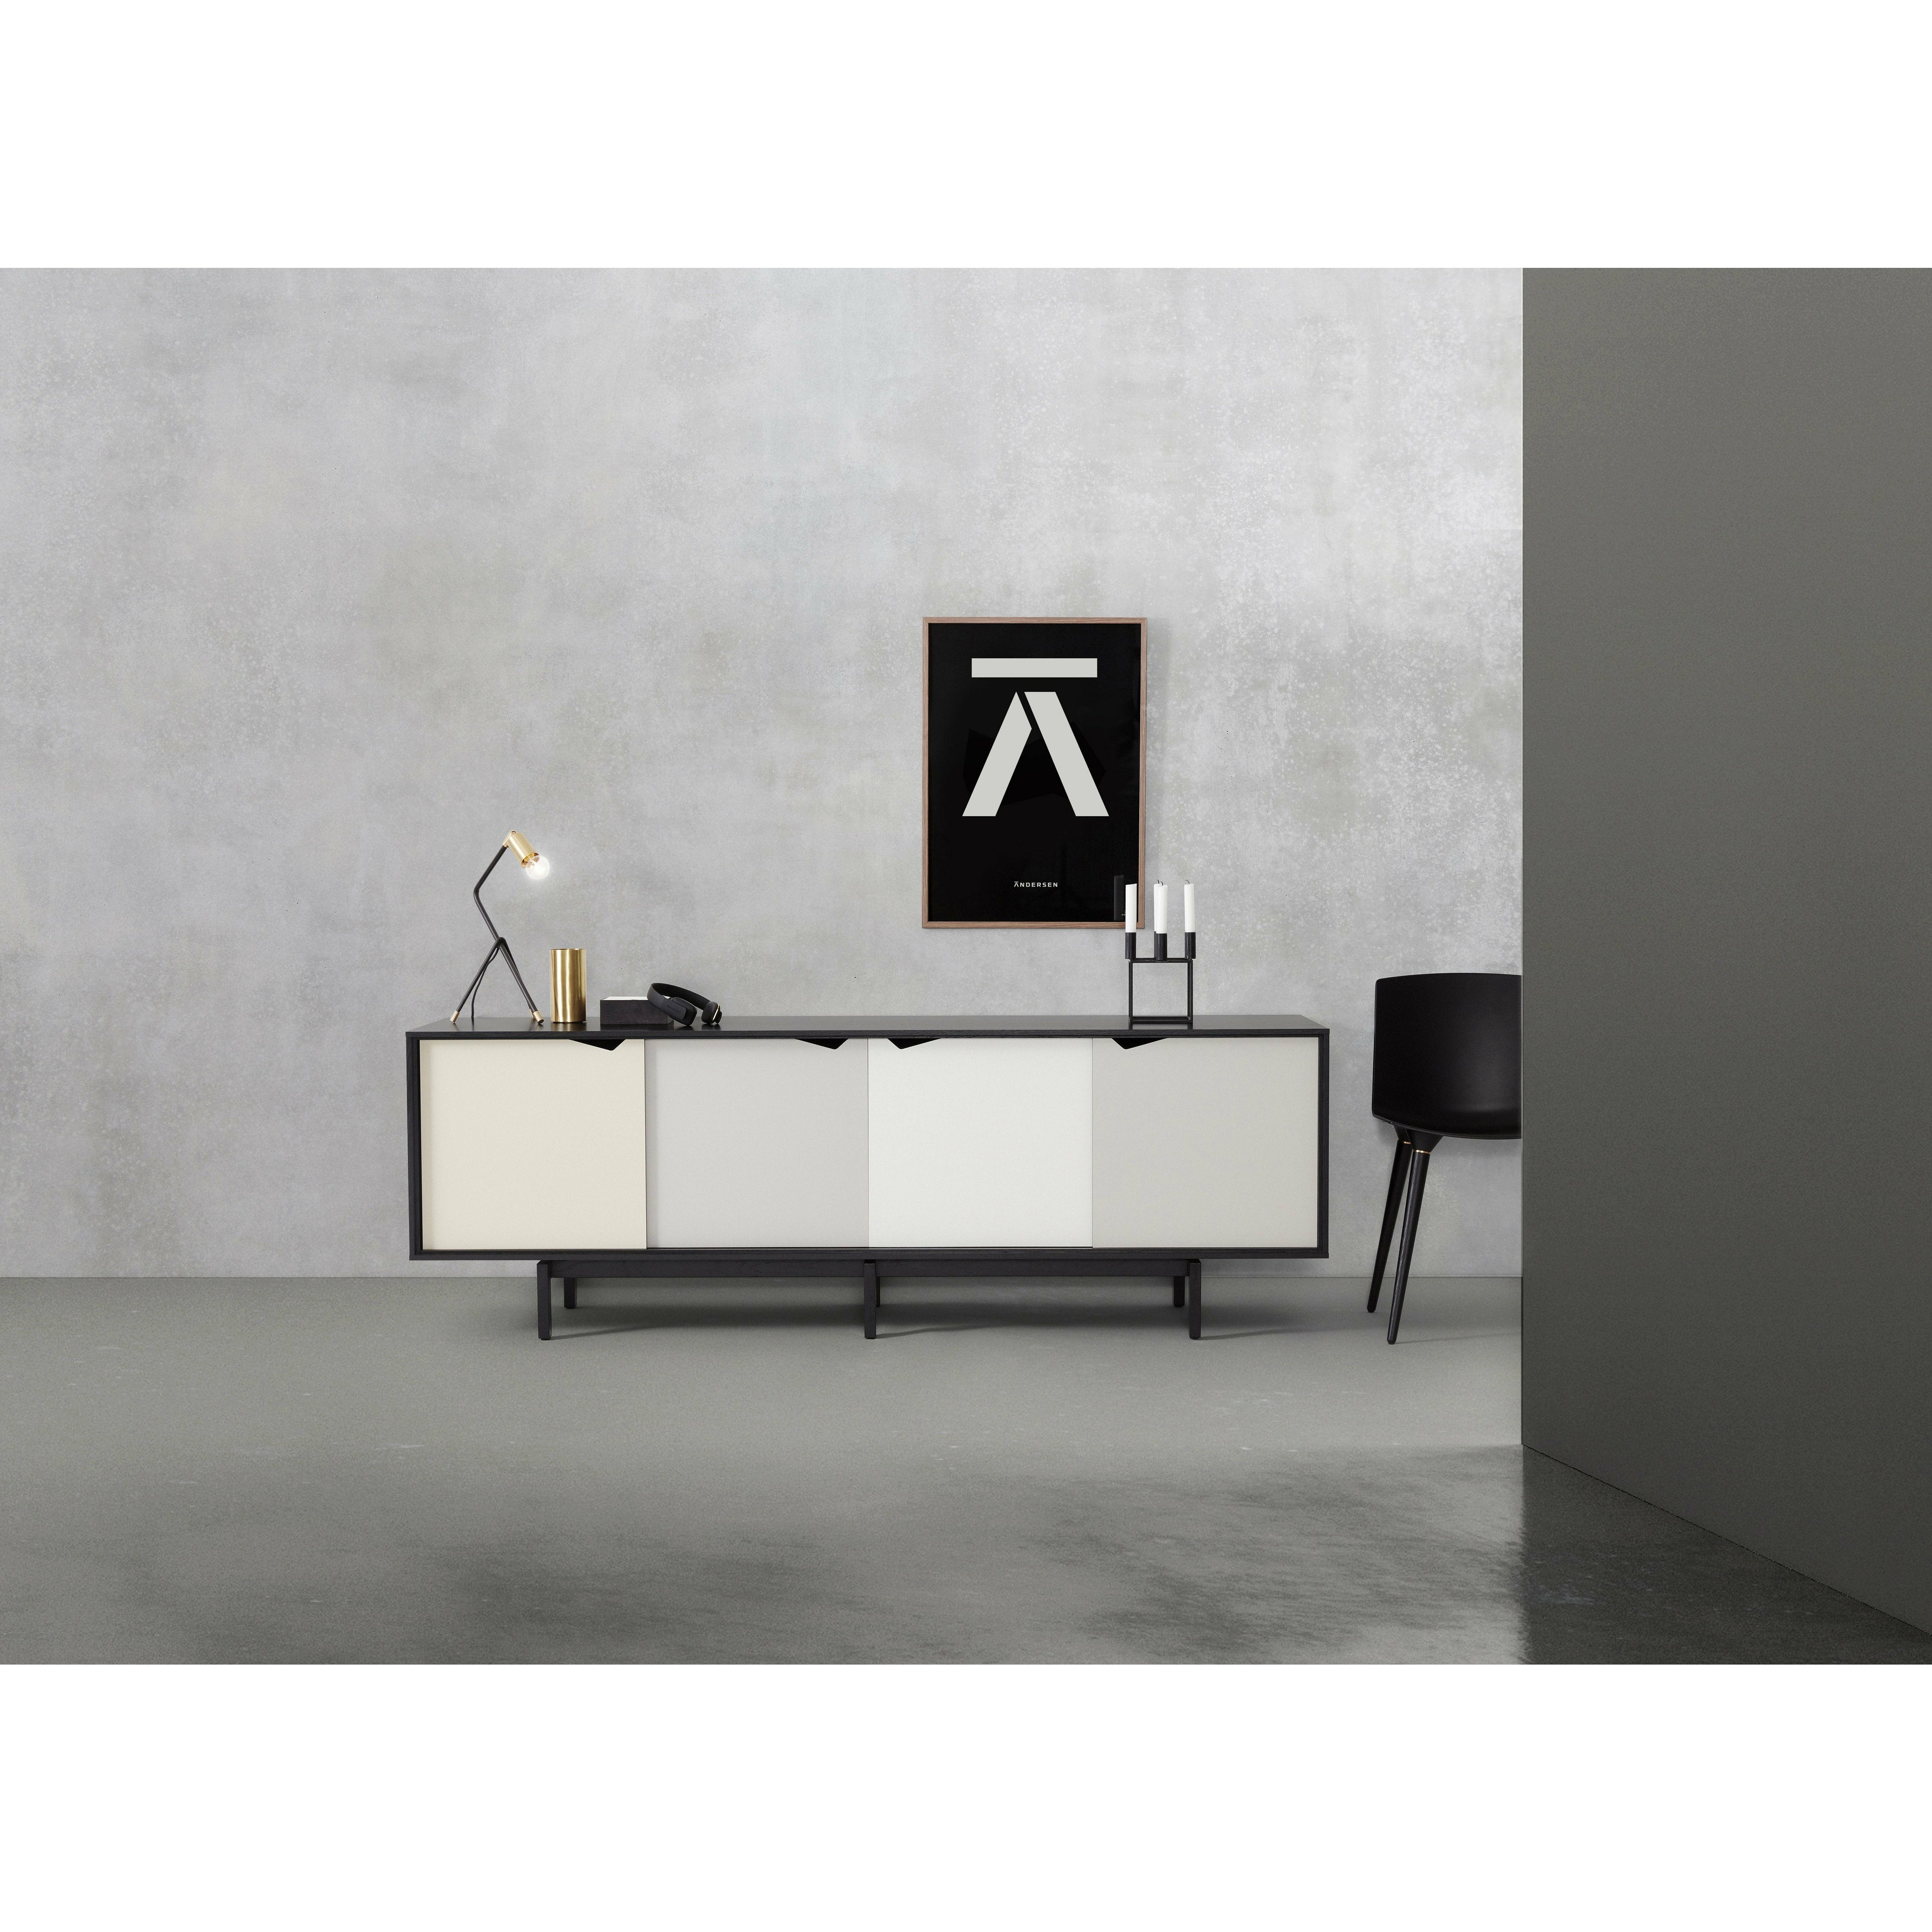 Andersen Furniture S1 på sidobadsvart, mångfärgade dörrar, 200 cm